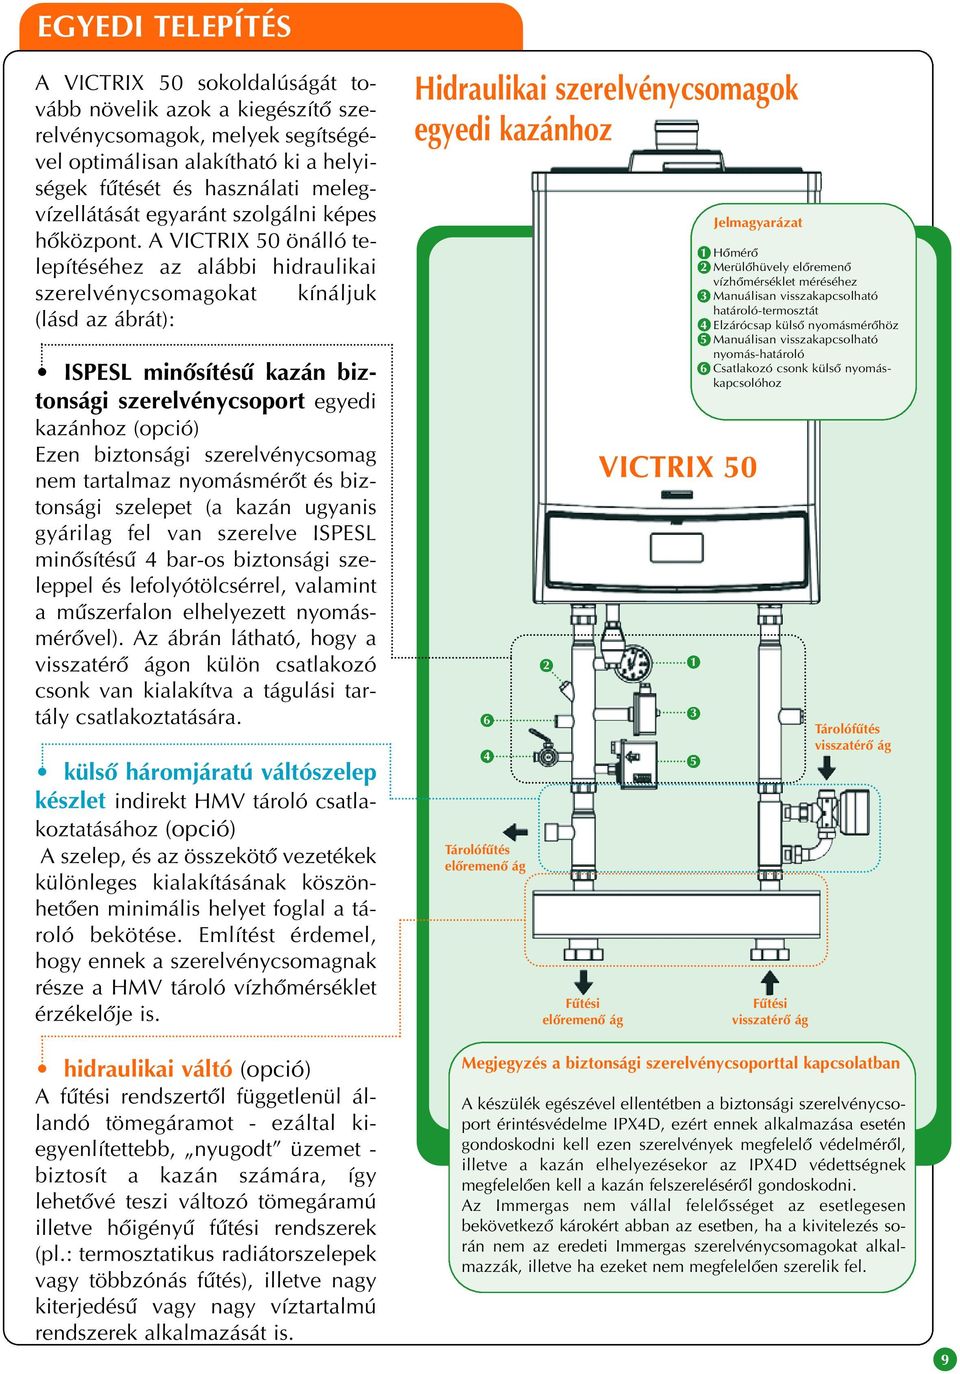 A VICTRIX 50 önálló telepítéséhez az alábbi hidraulikai szerelvénycsomagokat kínáljuk (lásd az ábrát): ISPESL minôsítésû kazán biztonsági szerelvénycsoport egyedi kazánhoz (opció) Ezen biztonsági